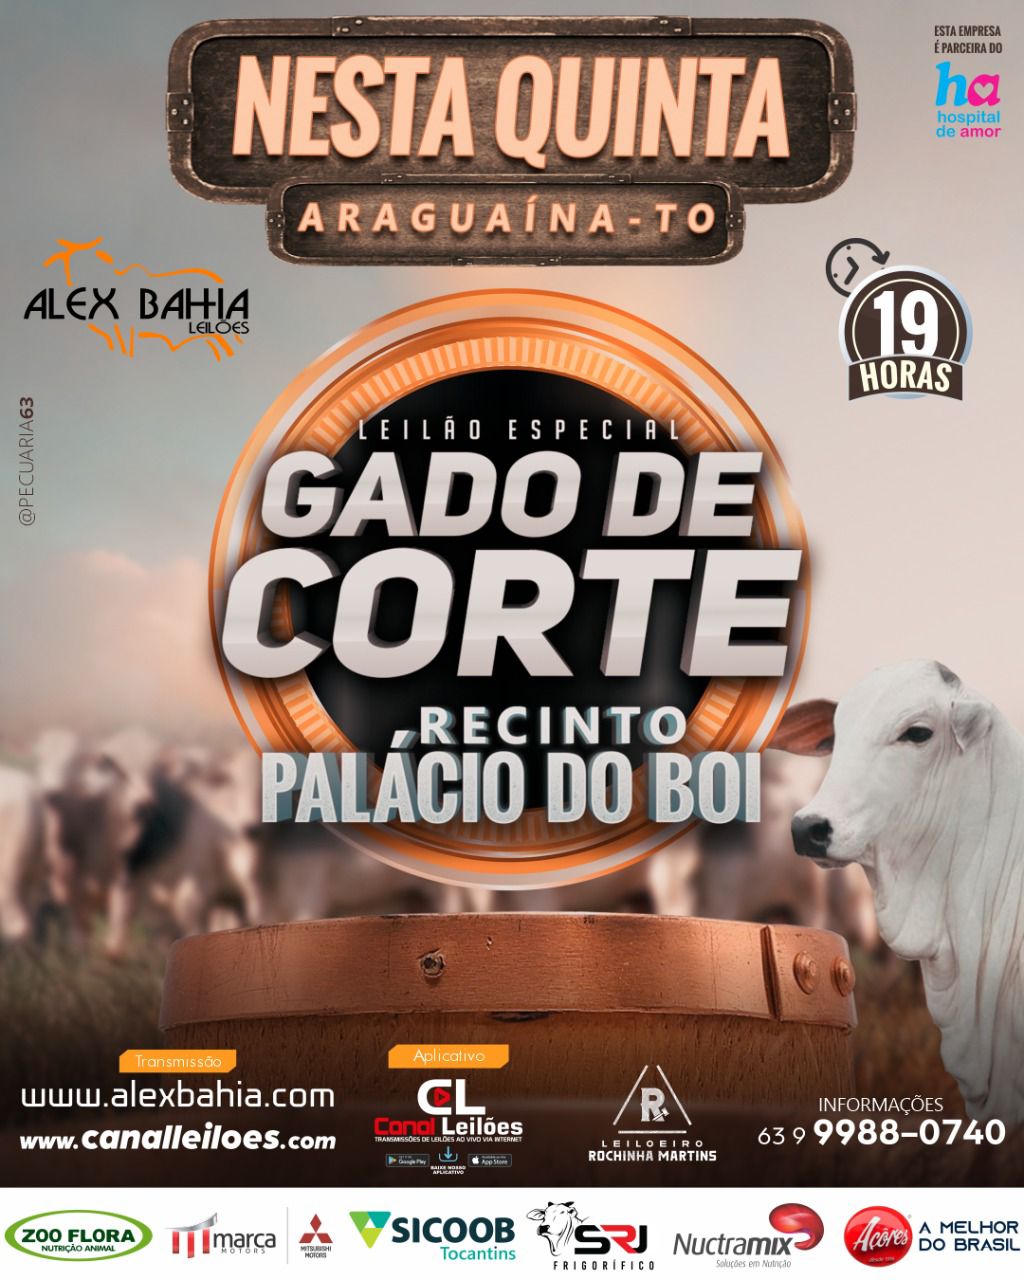 LEILÃO ESPECIAL DE GADO DE CORTE - ALEX BAHIA LEILÕES